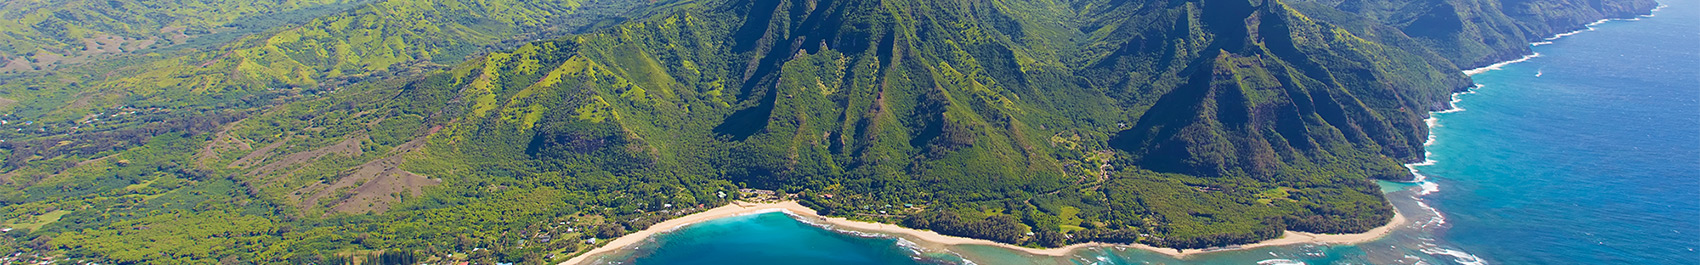 Aerial shot of Kauai